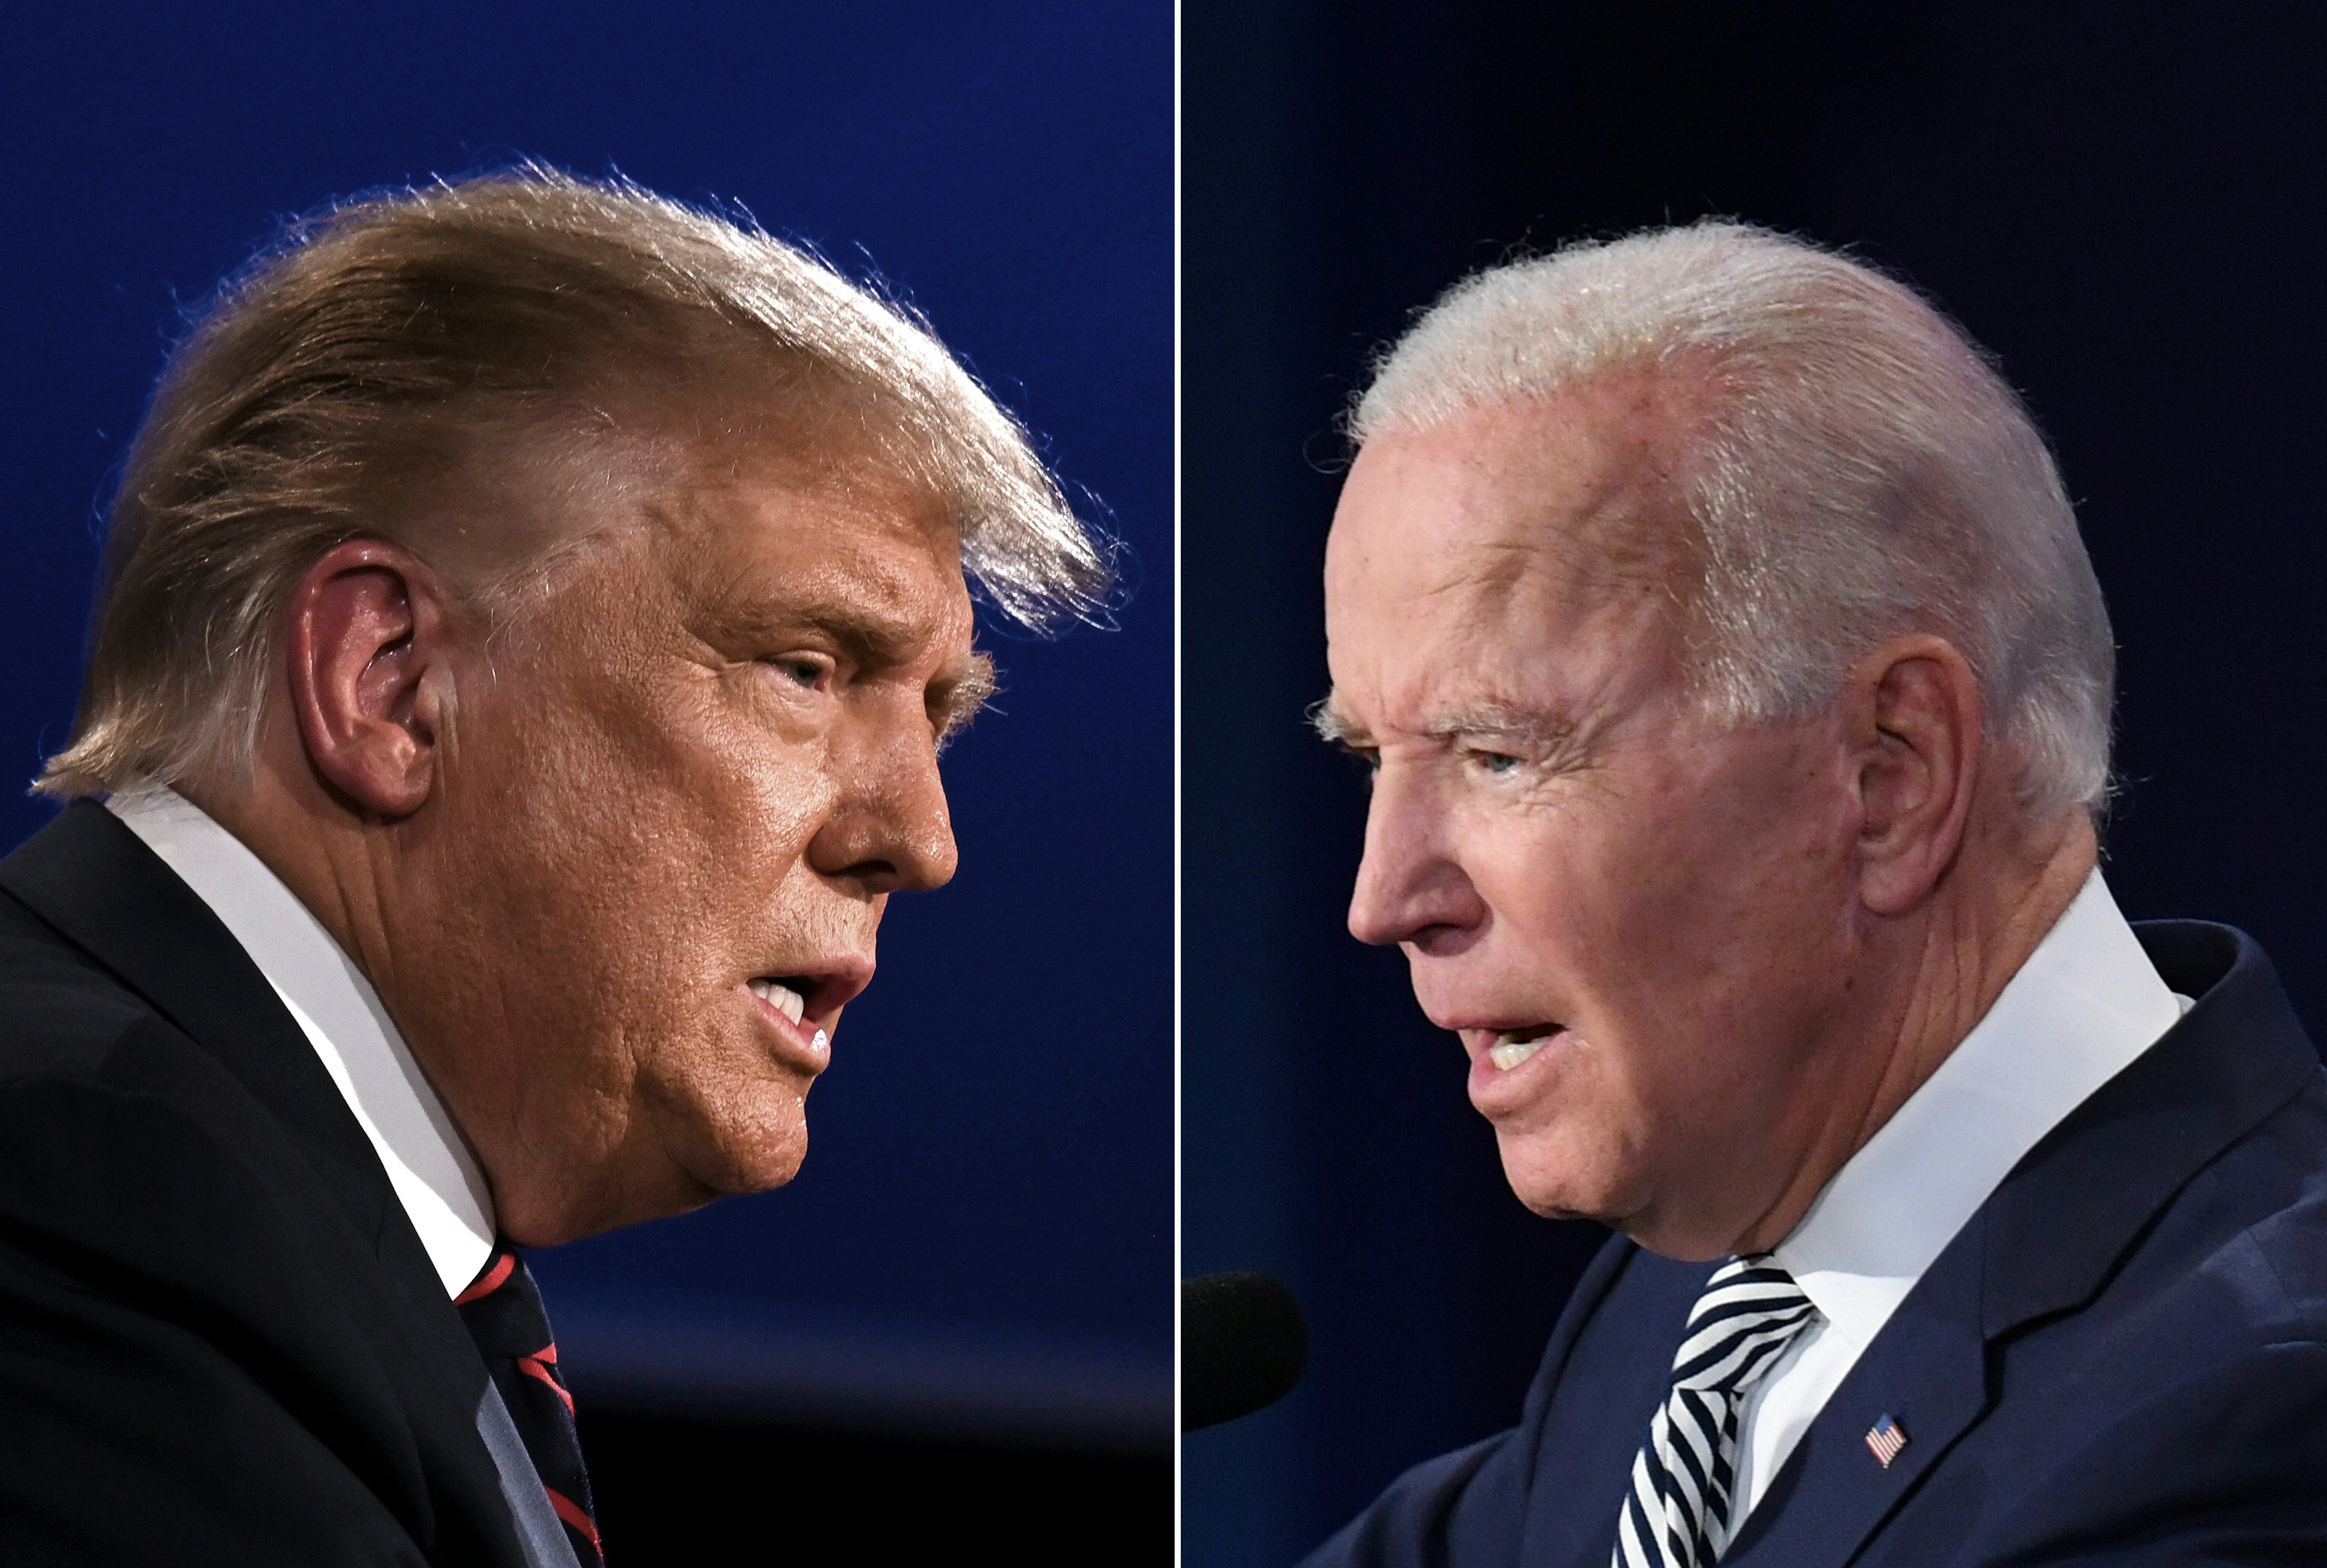 Trump and Biden at the debate